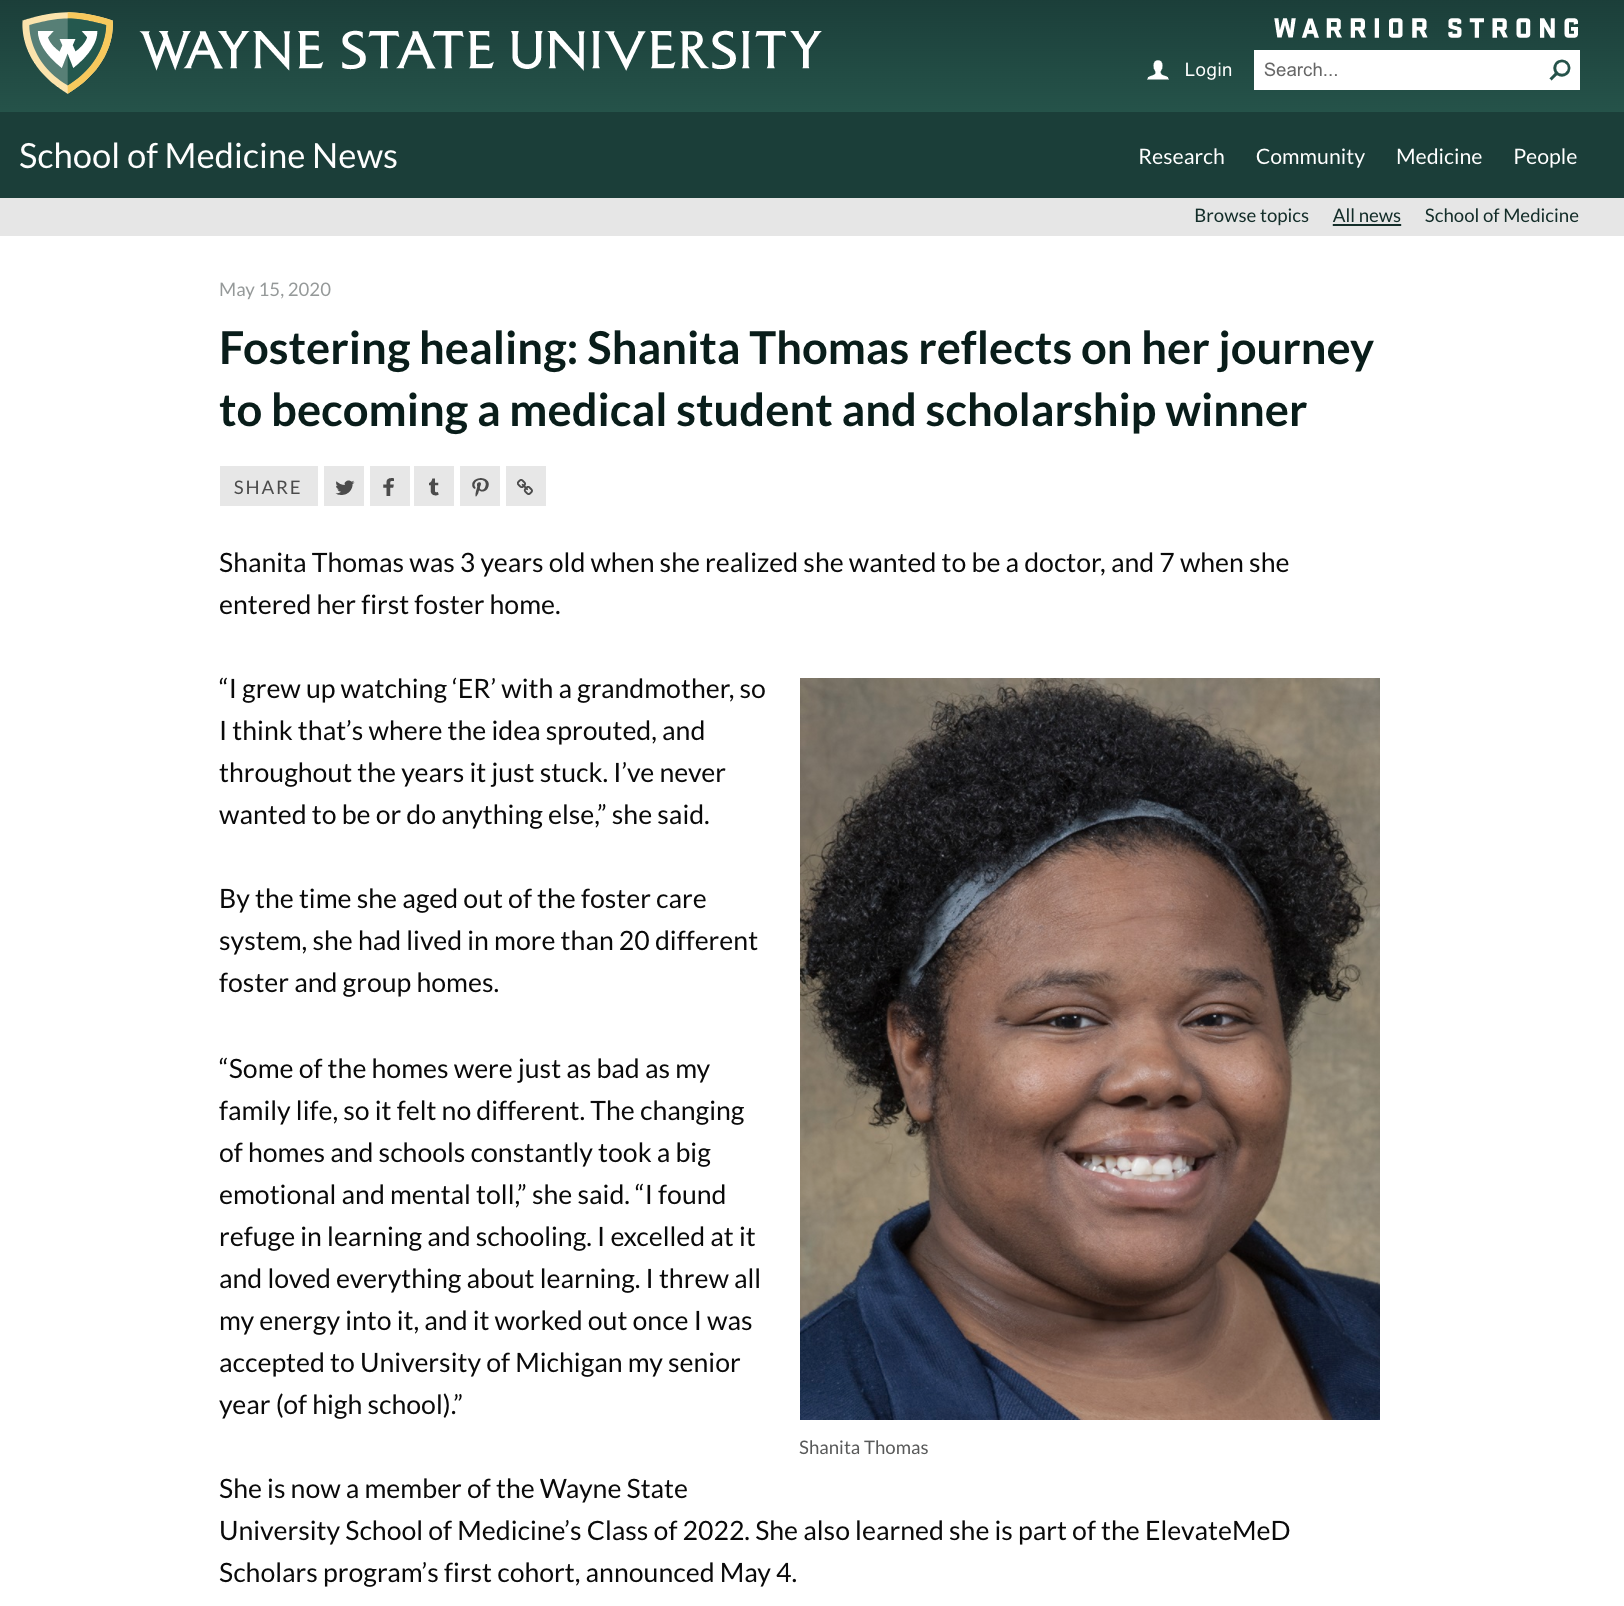 Wayne State University - ElevateMeD Scholar Shanita Thomas